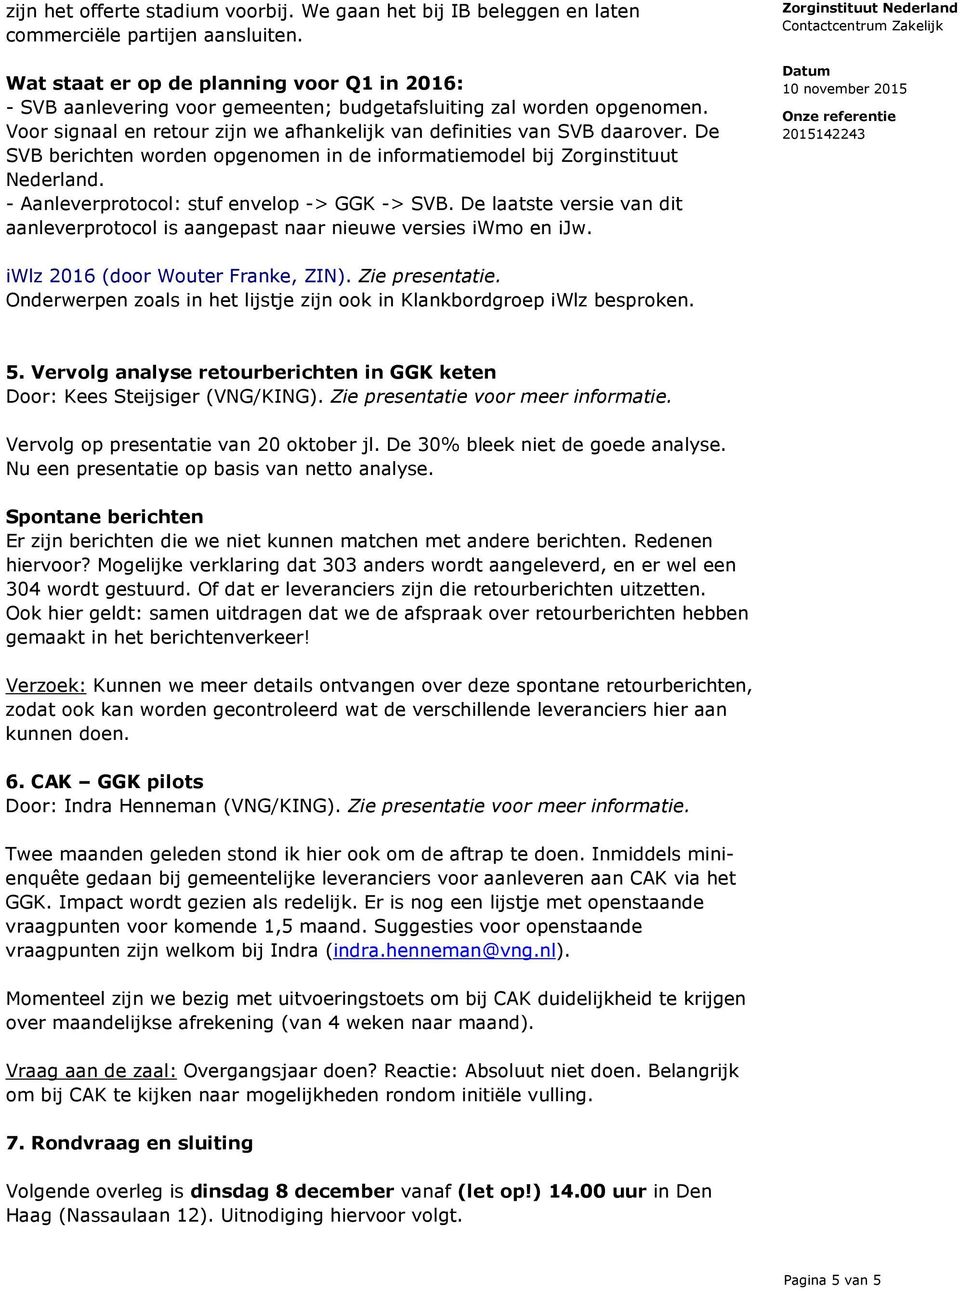 De SVB berichten worden opgenomen in de informatiemodel bij Zorginstituut Nederland. - Aanleverprotocol: stuf envelop -> GGK -> SVB.